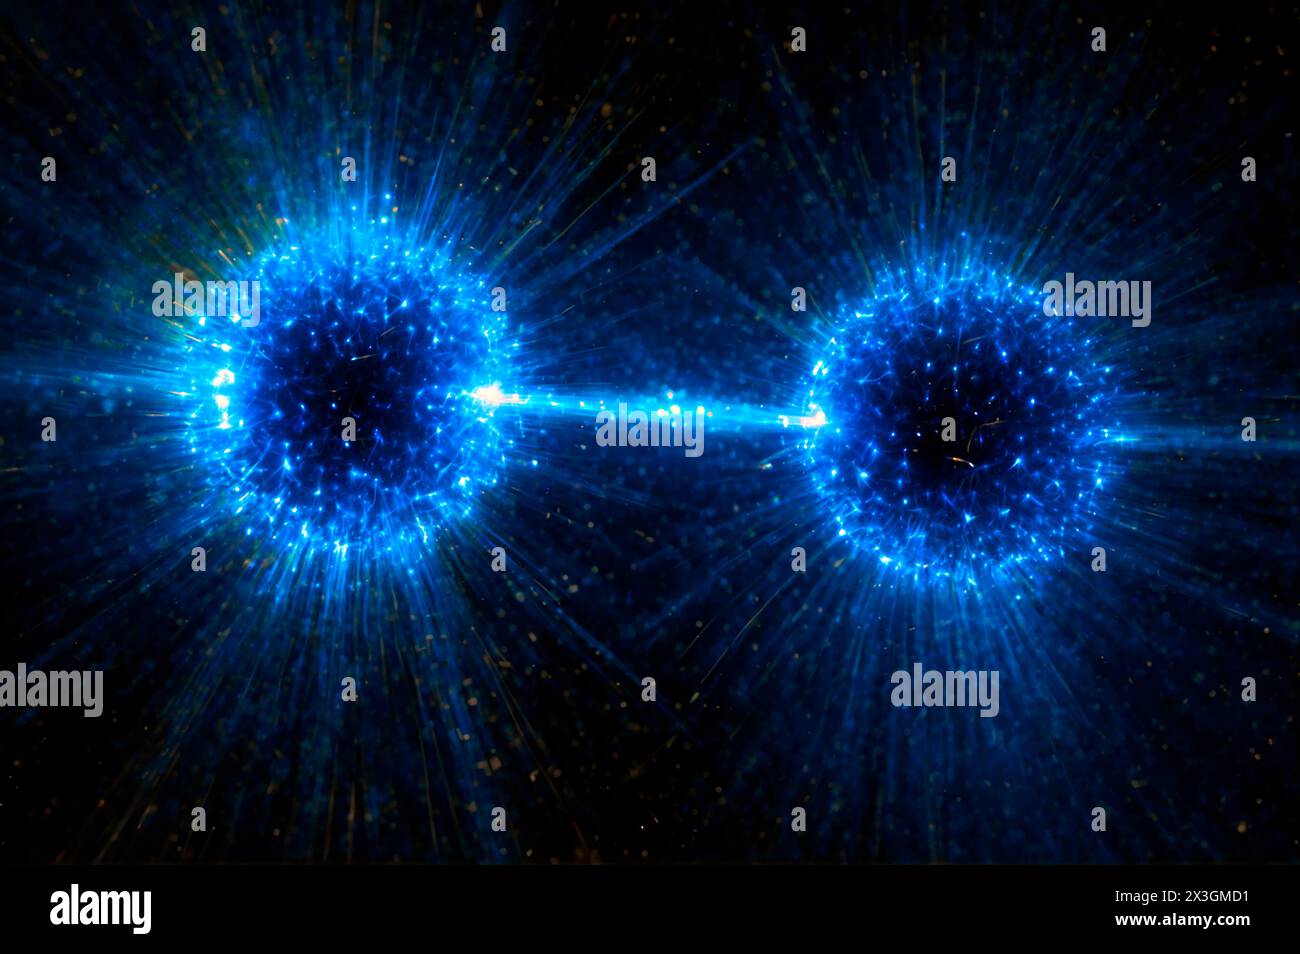 Stelle binarie di neutroni che stanno per scontrarsi, illustrazione. Tale collisione è nota come kilonova. Si pensa che Kilonovae sia l'origine di tutti gli elementi più pesanti del ferro nell'universo. Foto Stock